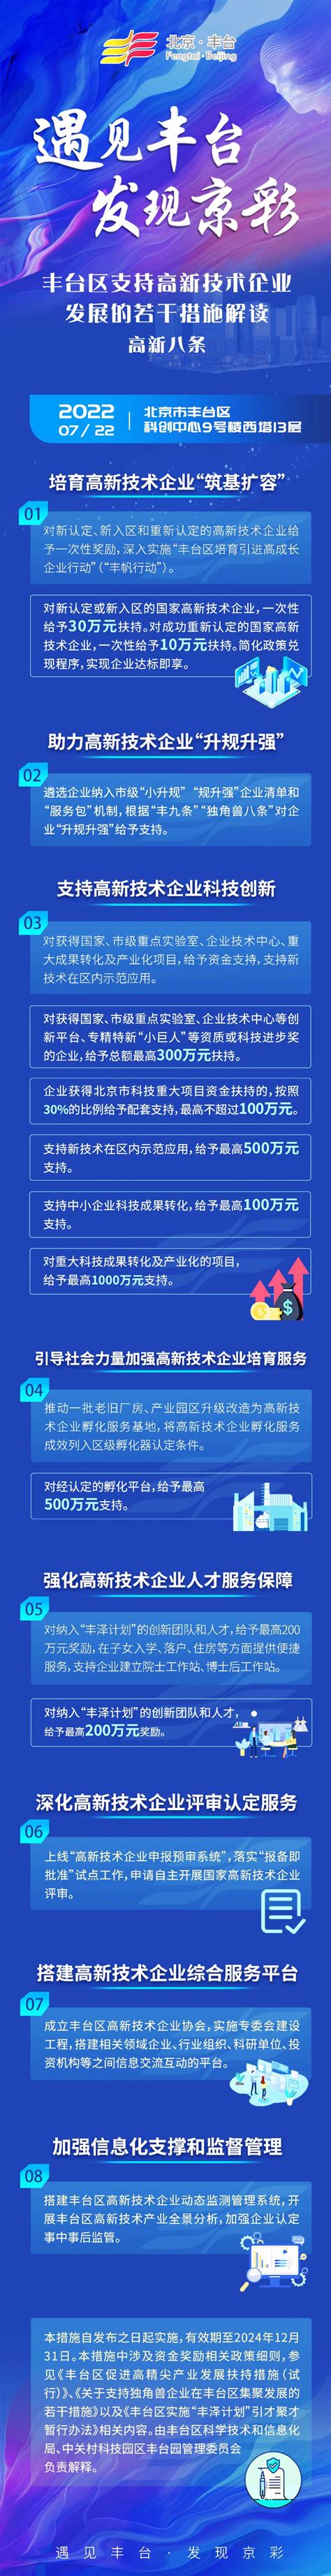 丰台园高新技术科技服务业快速发展-北京市丰台区人民政府网站